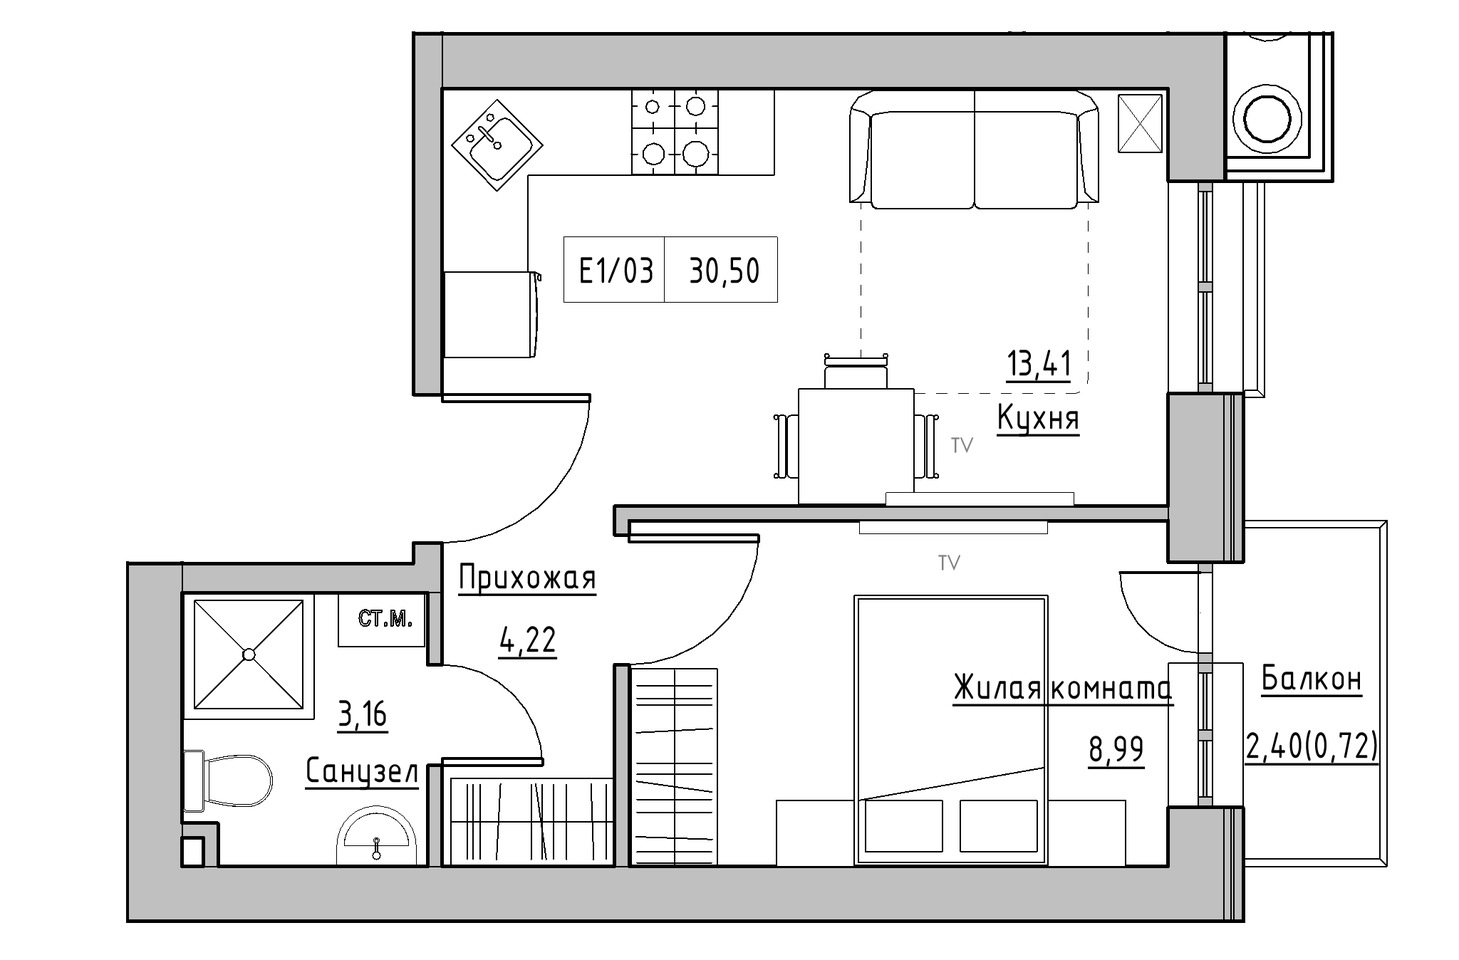 Планування 1-к квартира площею 29.78м2, KS-005-05/0002.